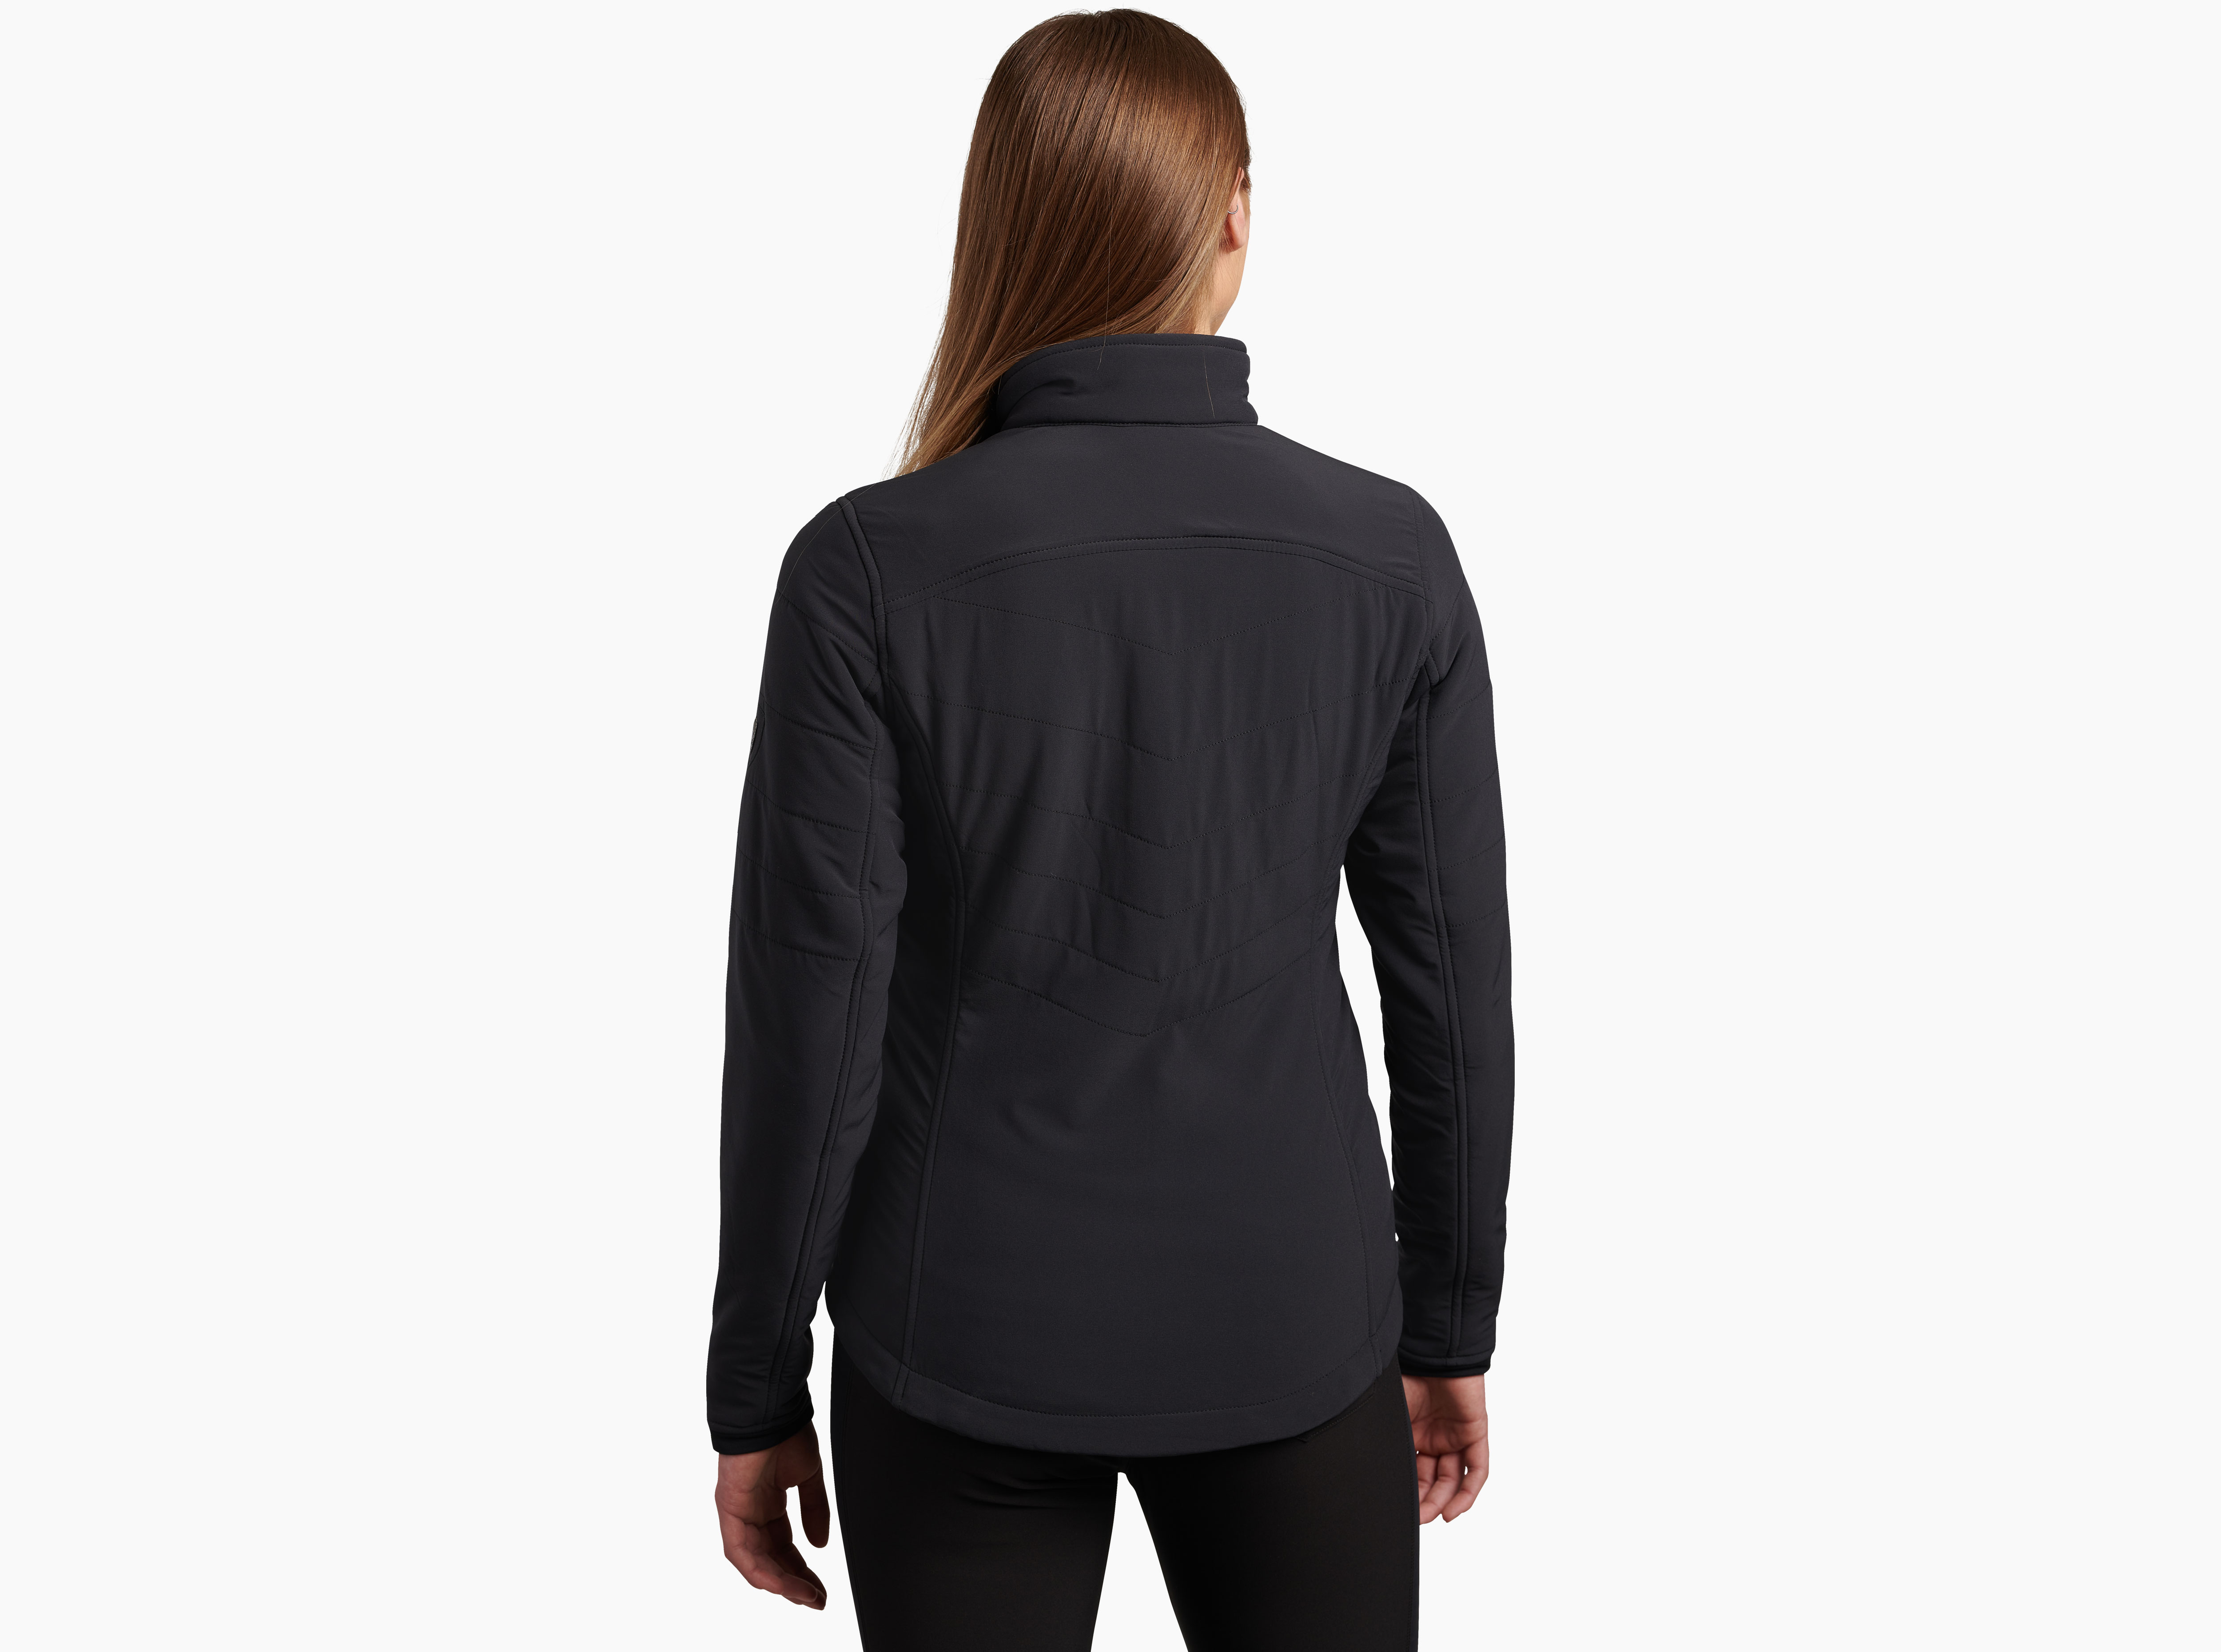 Aero™ Fleece Jacket - KÜHL Women's Outerwear